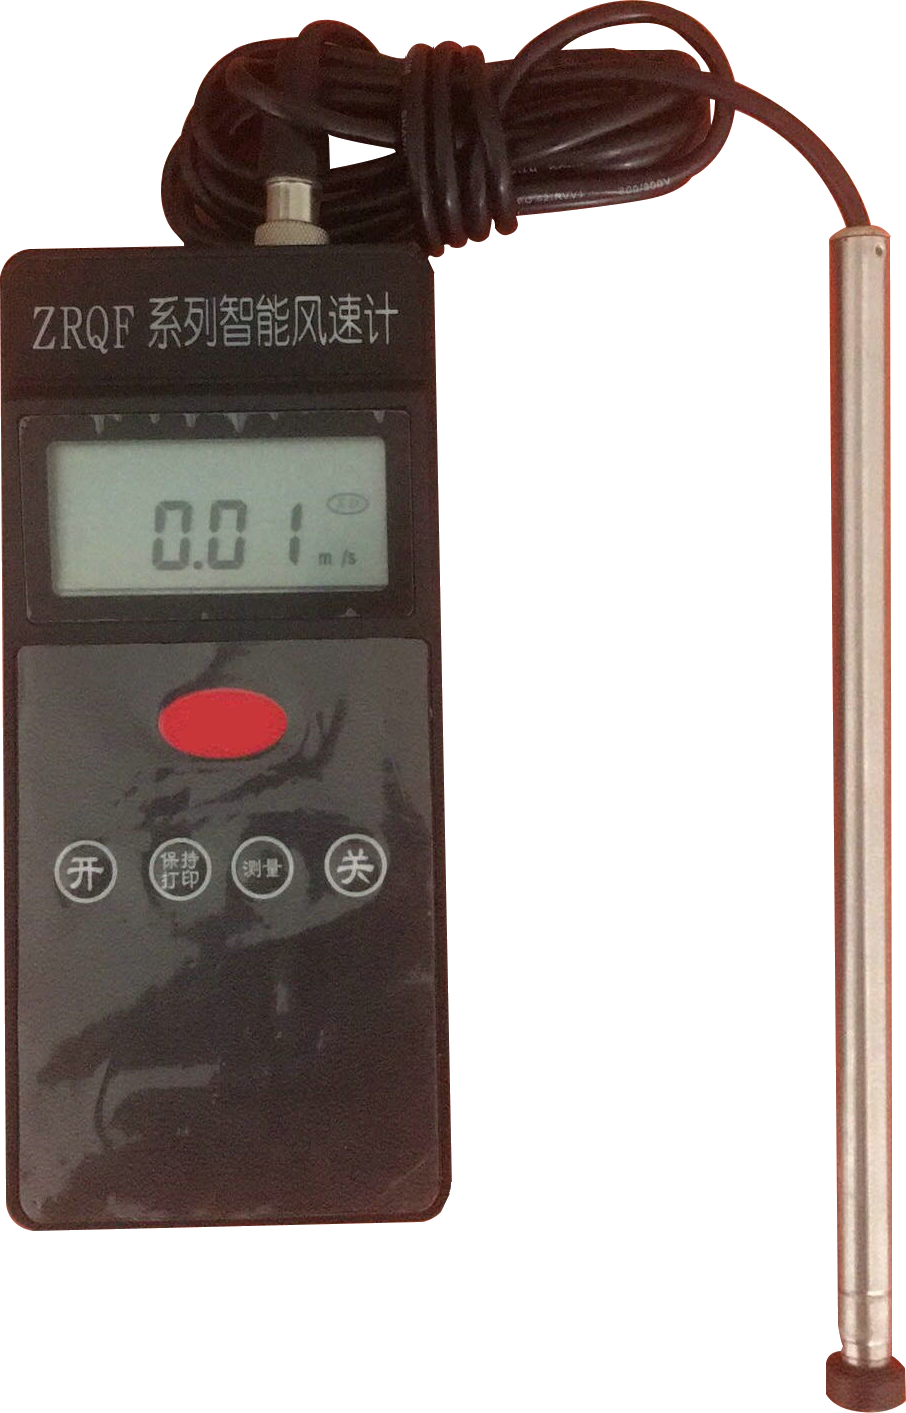 ZRQF-F30J型智能热球式风速计